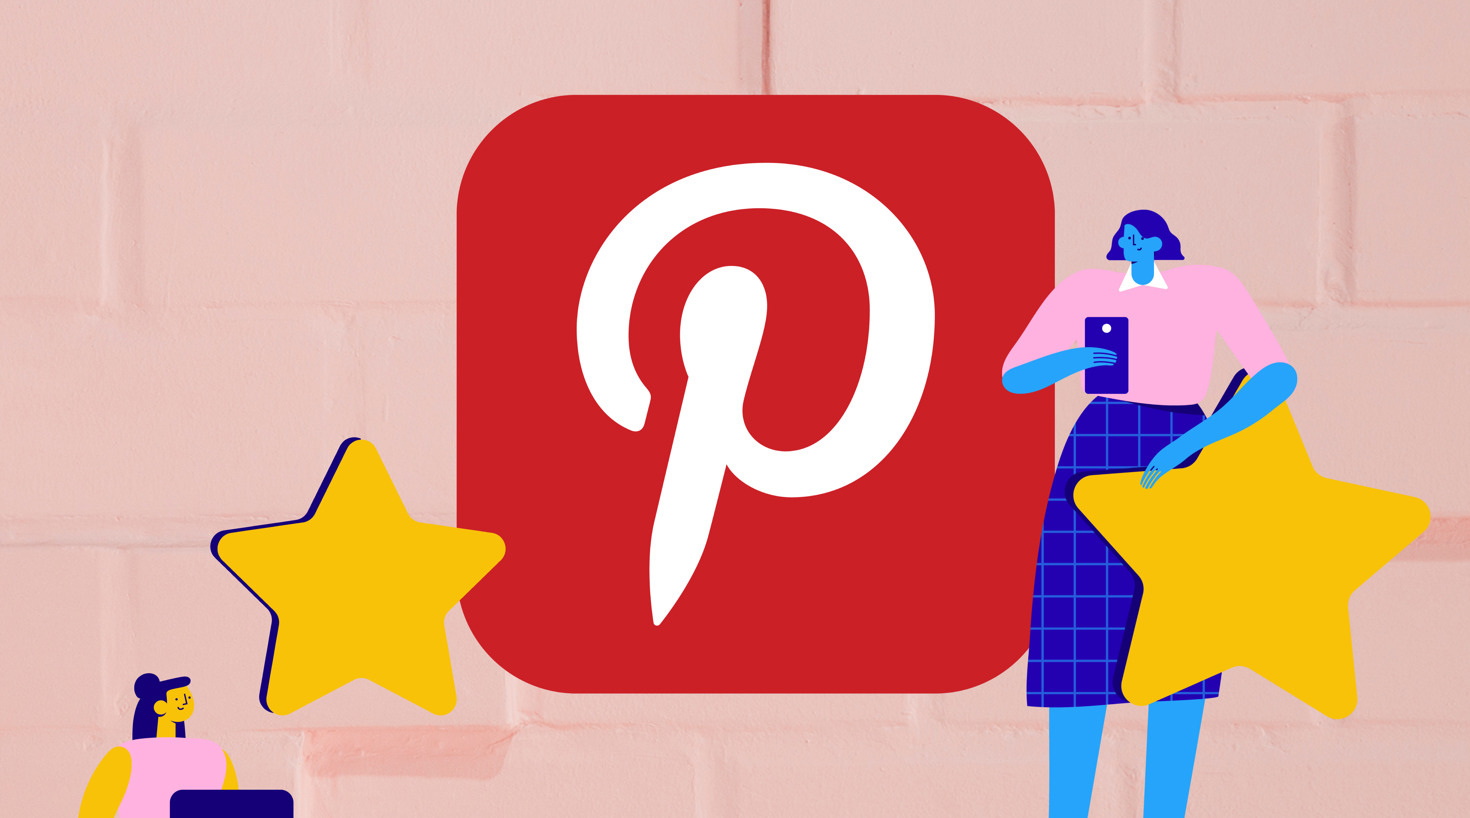 Er du interessert i merkevarebygging og økt trafikk? Da kan Pinterest være en kanal du bør teste ut! Lurer du på hvordan du kommer i gang? La oss hjelpe deg!